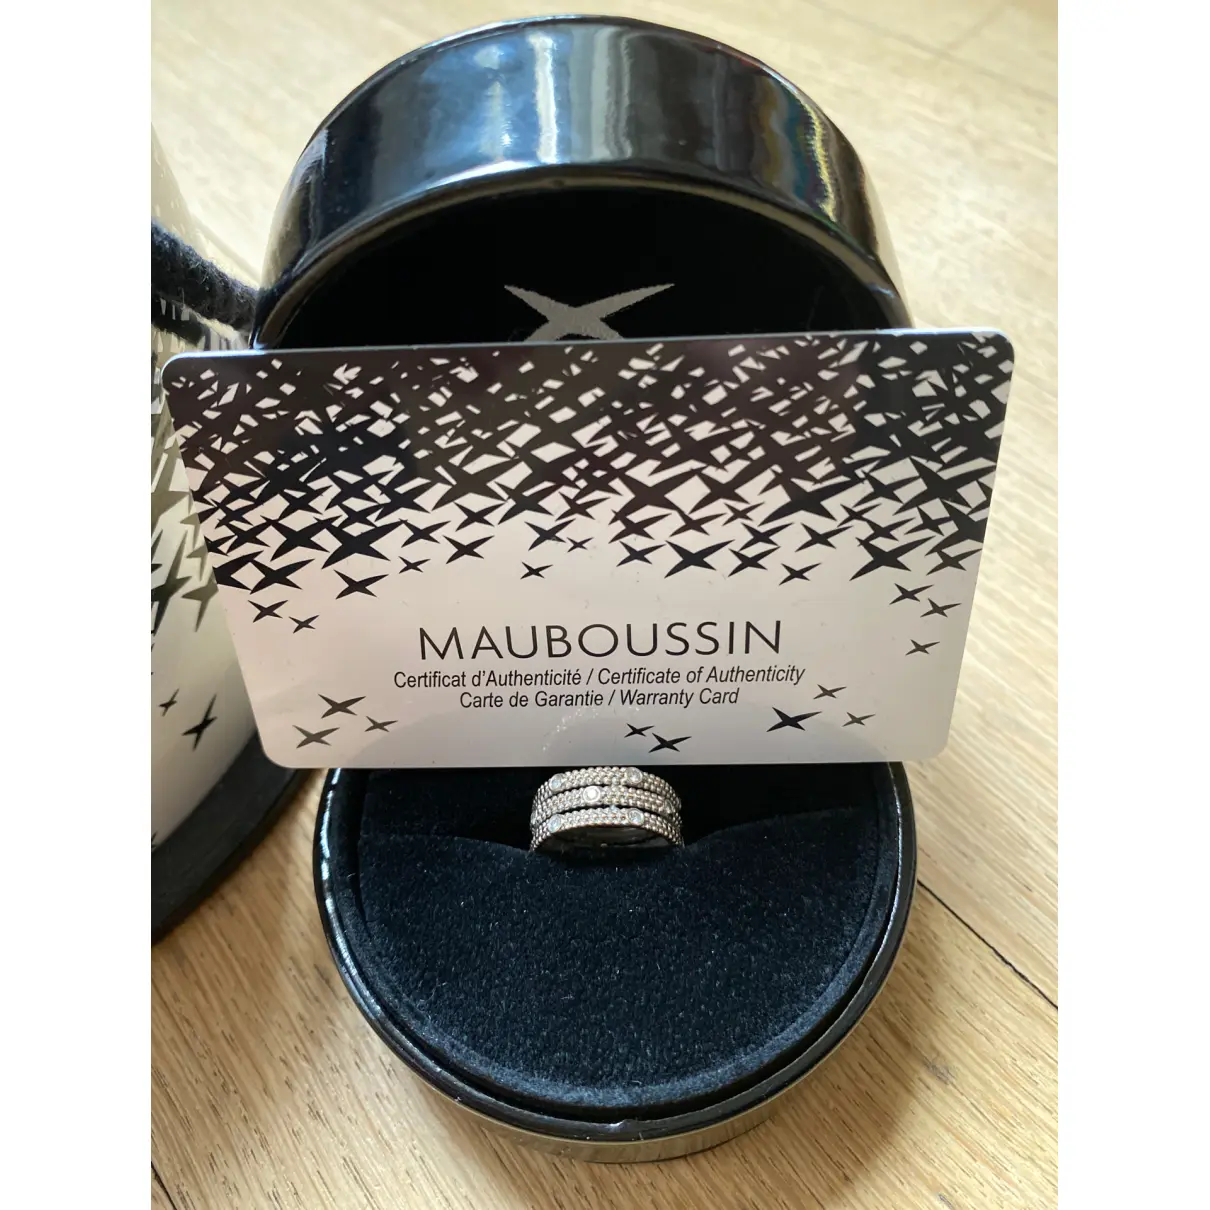 Buy Mauboussin Premier Jour white gold ring online